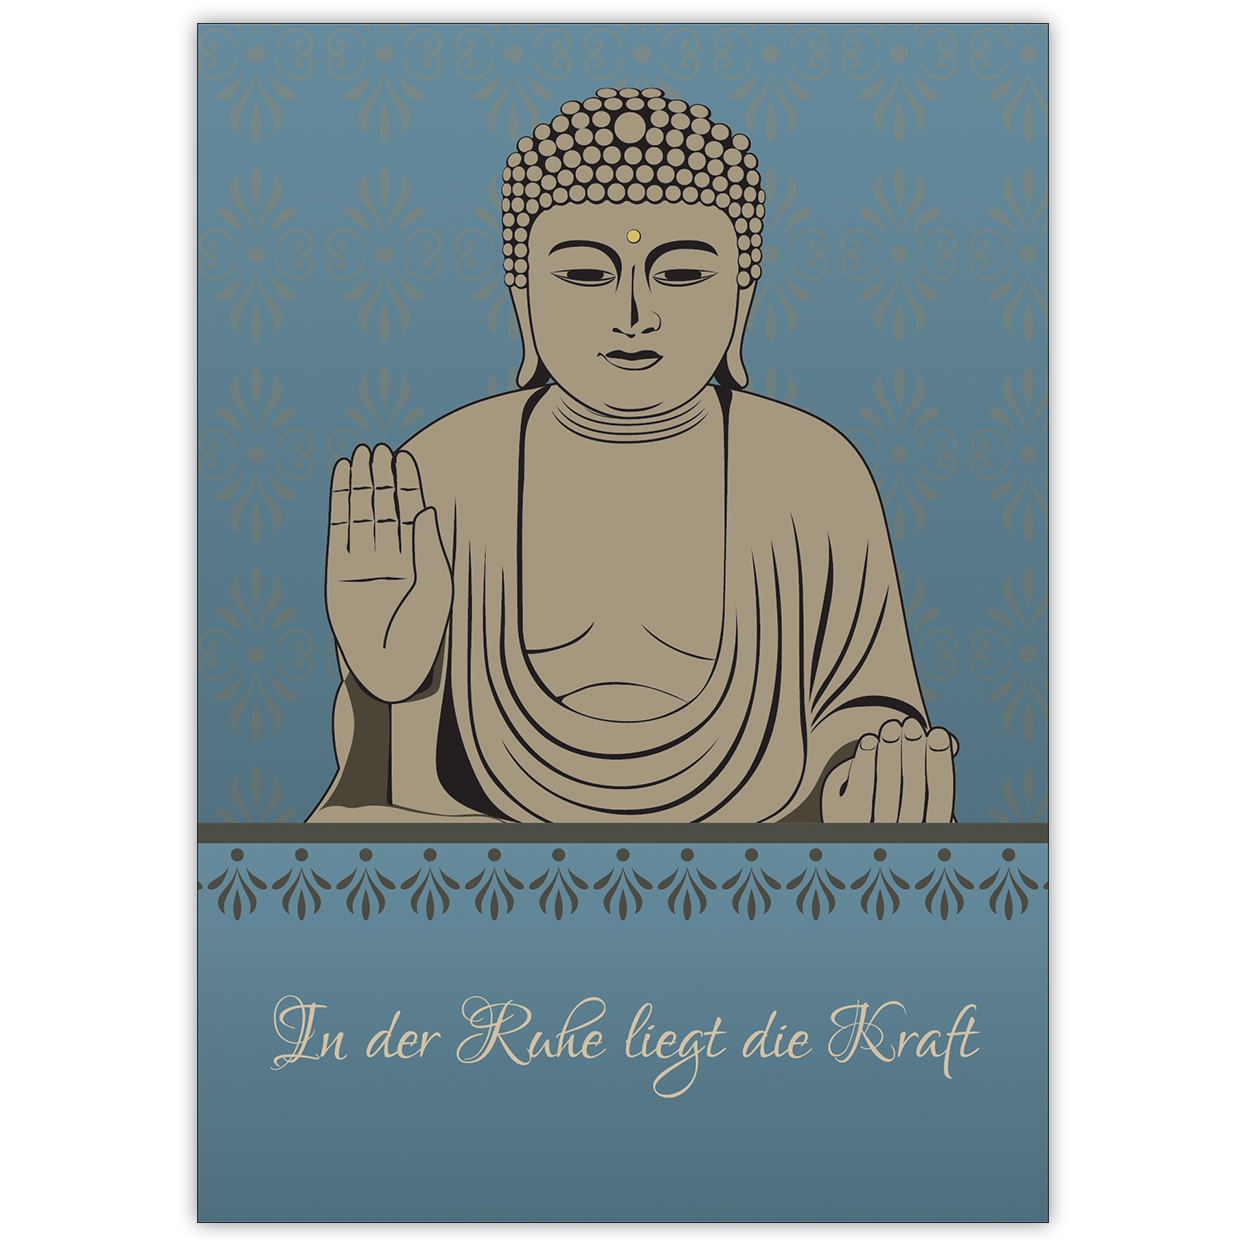 Klassische Spruchkarte: "In der Ruhe liegt die Kraft" mit schönem Buddha auf blau